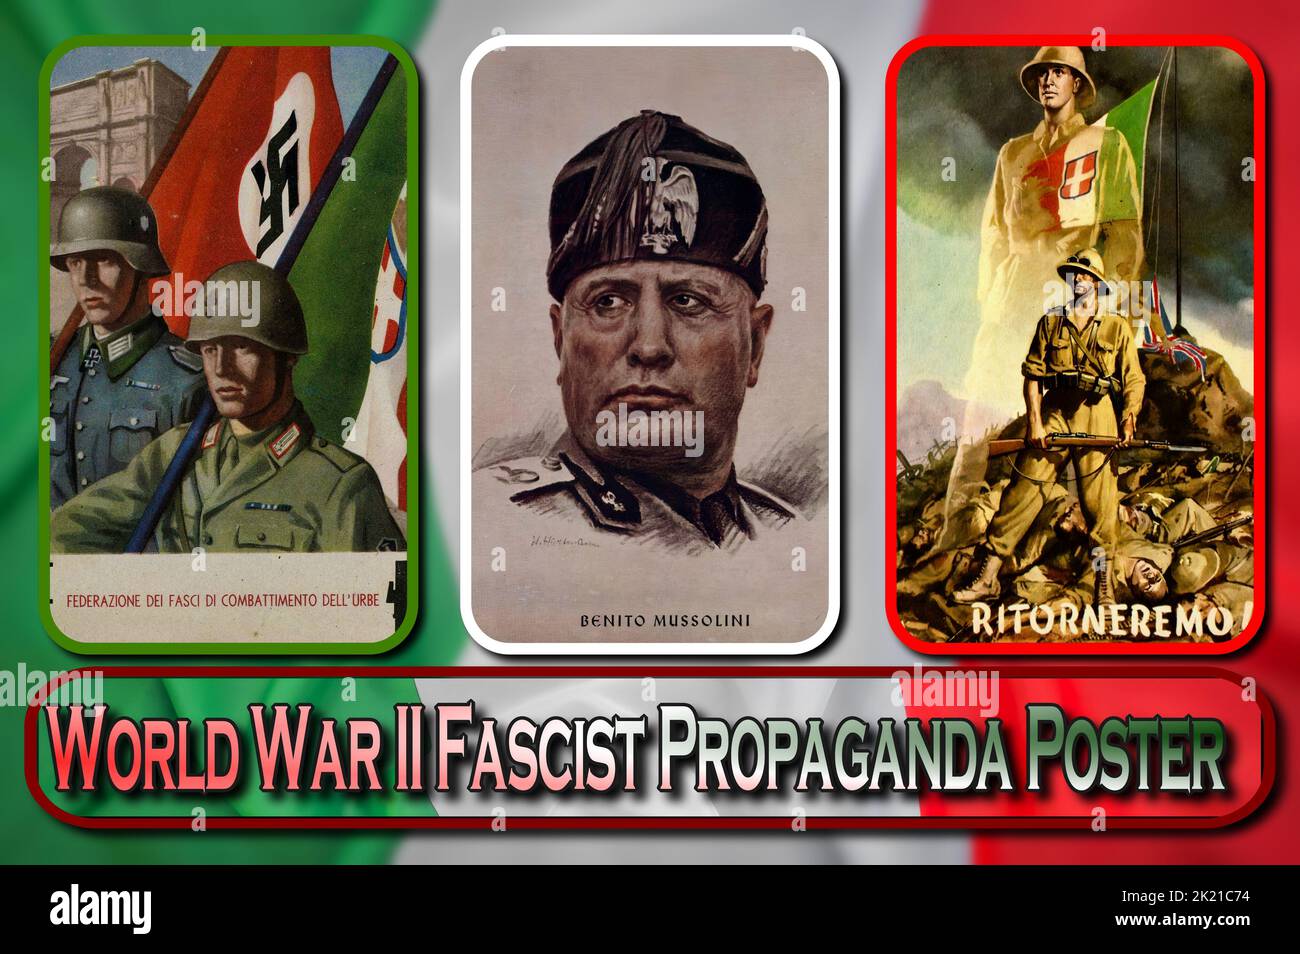 Affiches de propagande de l'Italie fasciste, pendant la Seconde Guerre mondiale Banque D'Images